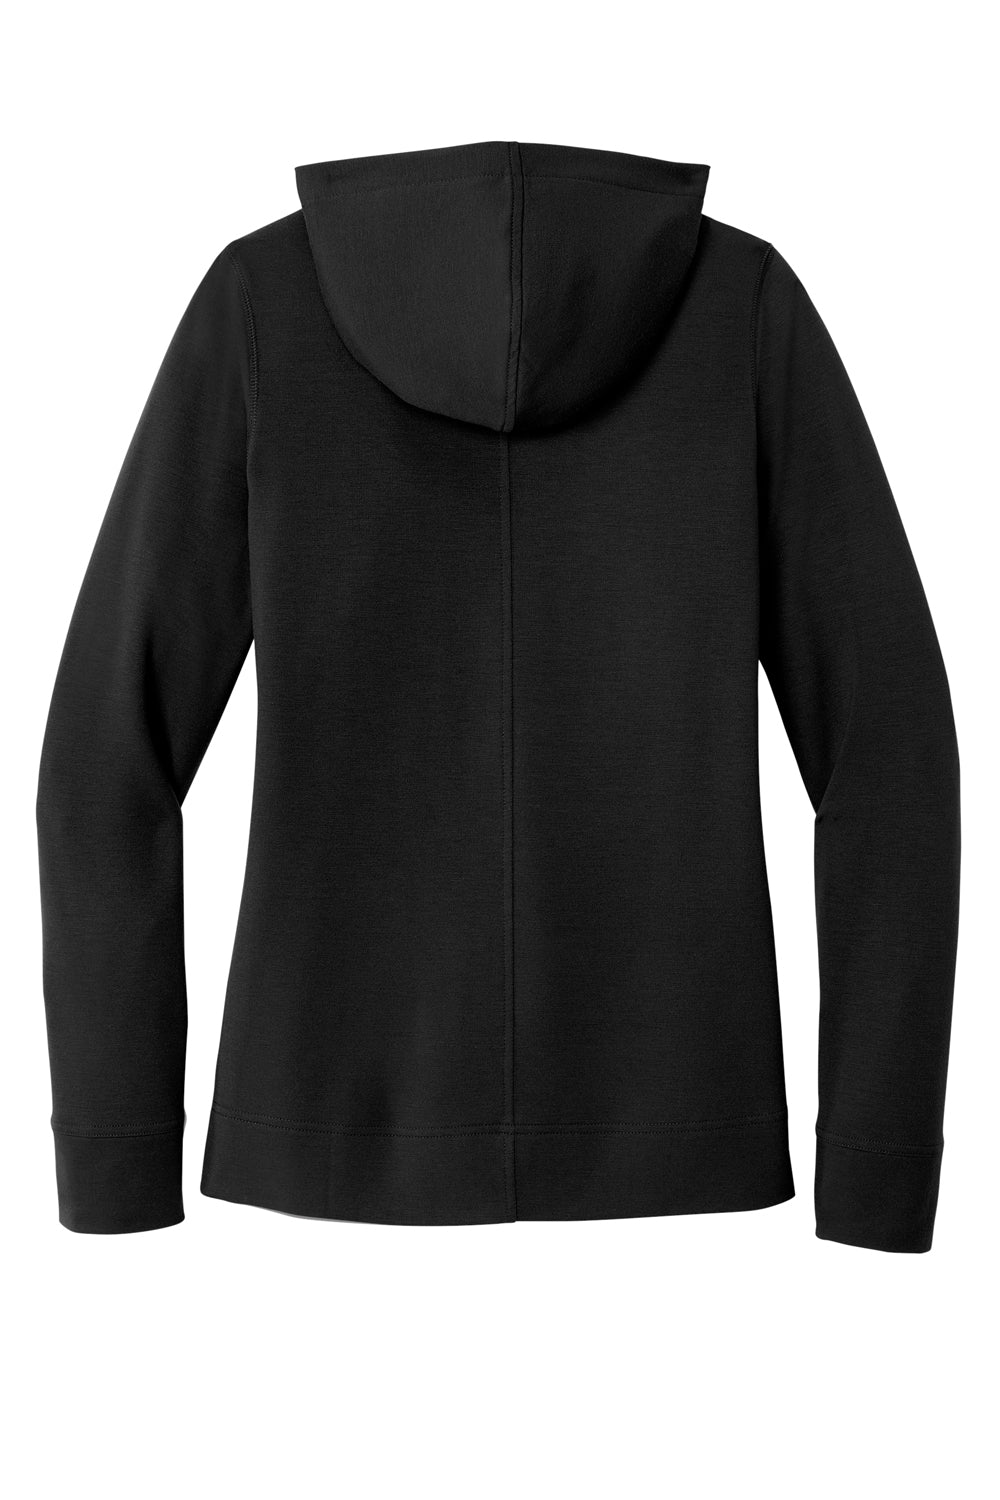 Port Authority LK826 Womens Microterry Hooded Sweatshirt Hoodie Deep Black Flat Back